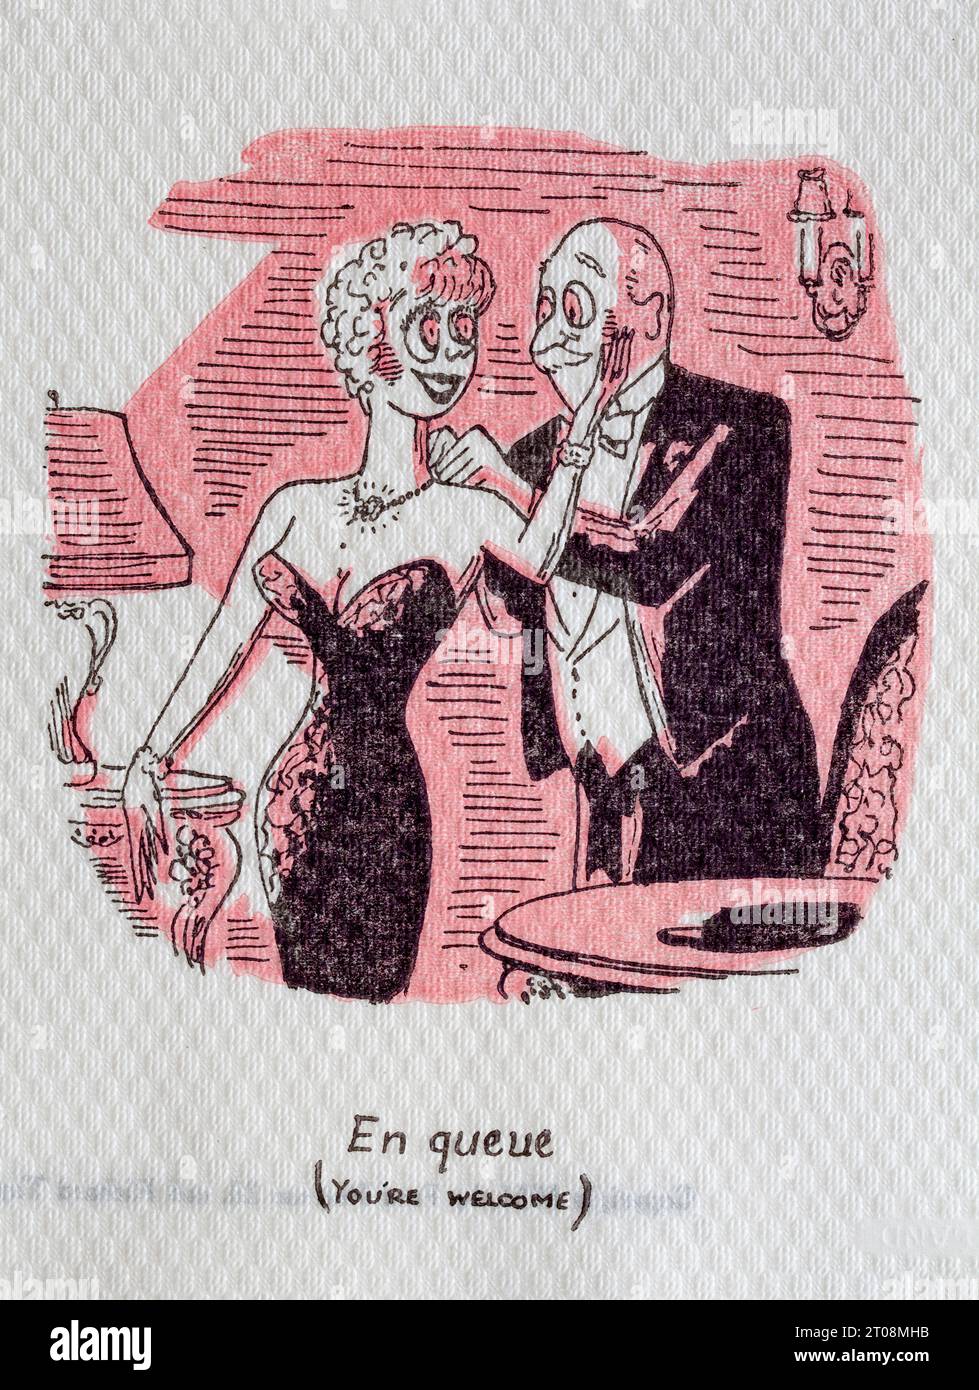 1950er Jahre Cartoon Serviette - französischer Witz - EN Queue - Sie sind willkommen Stockfoto